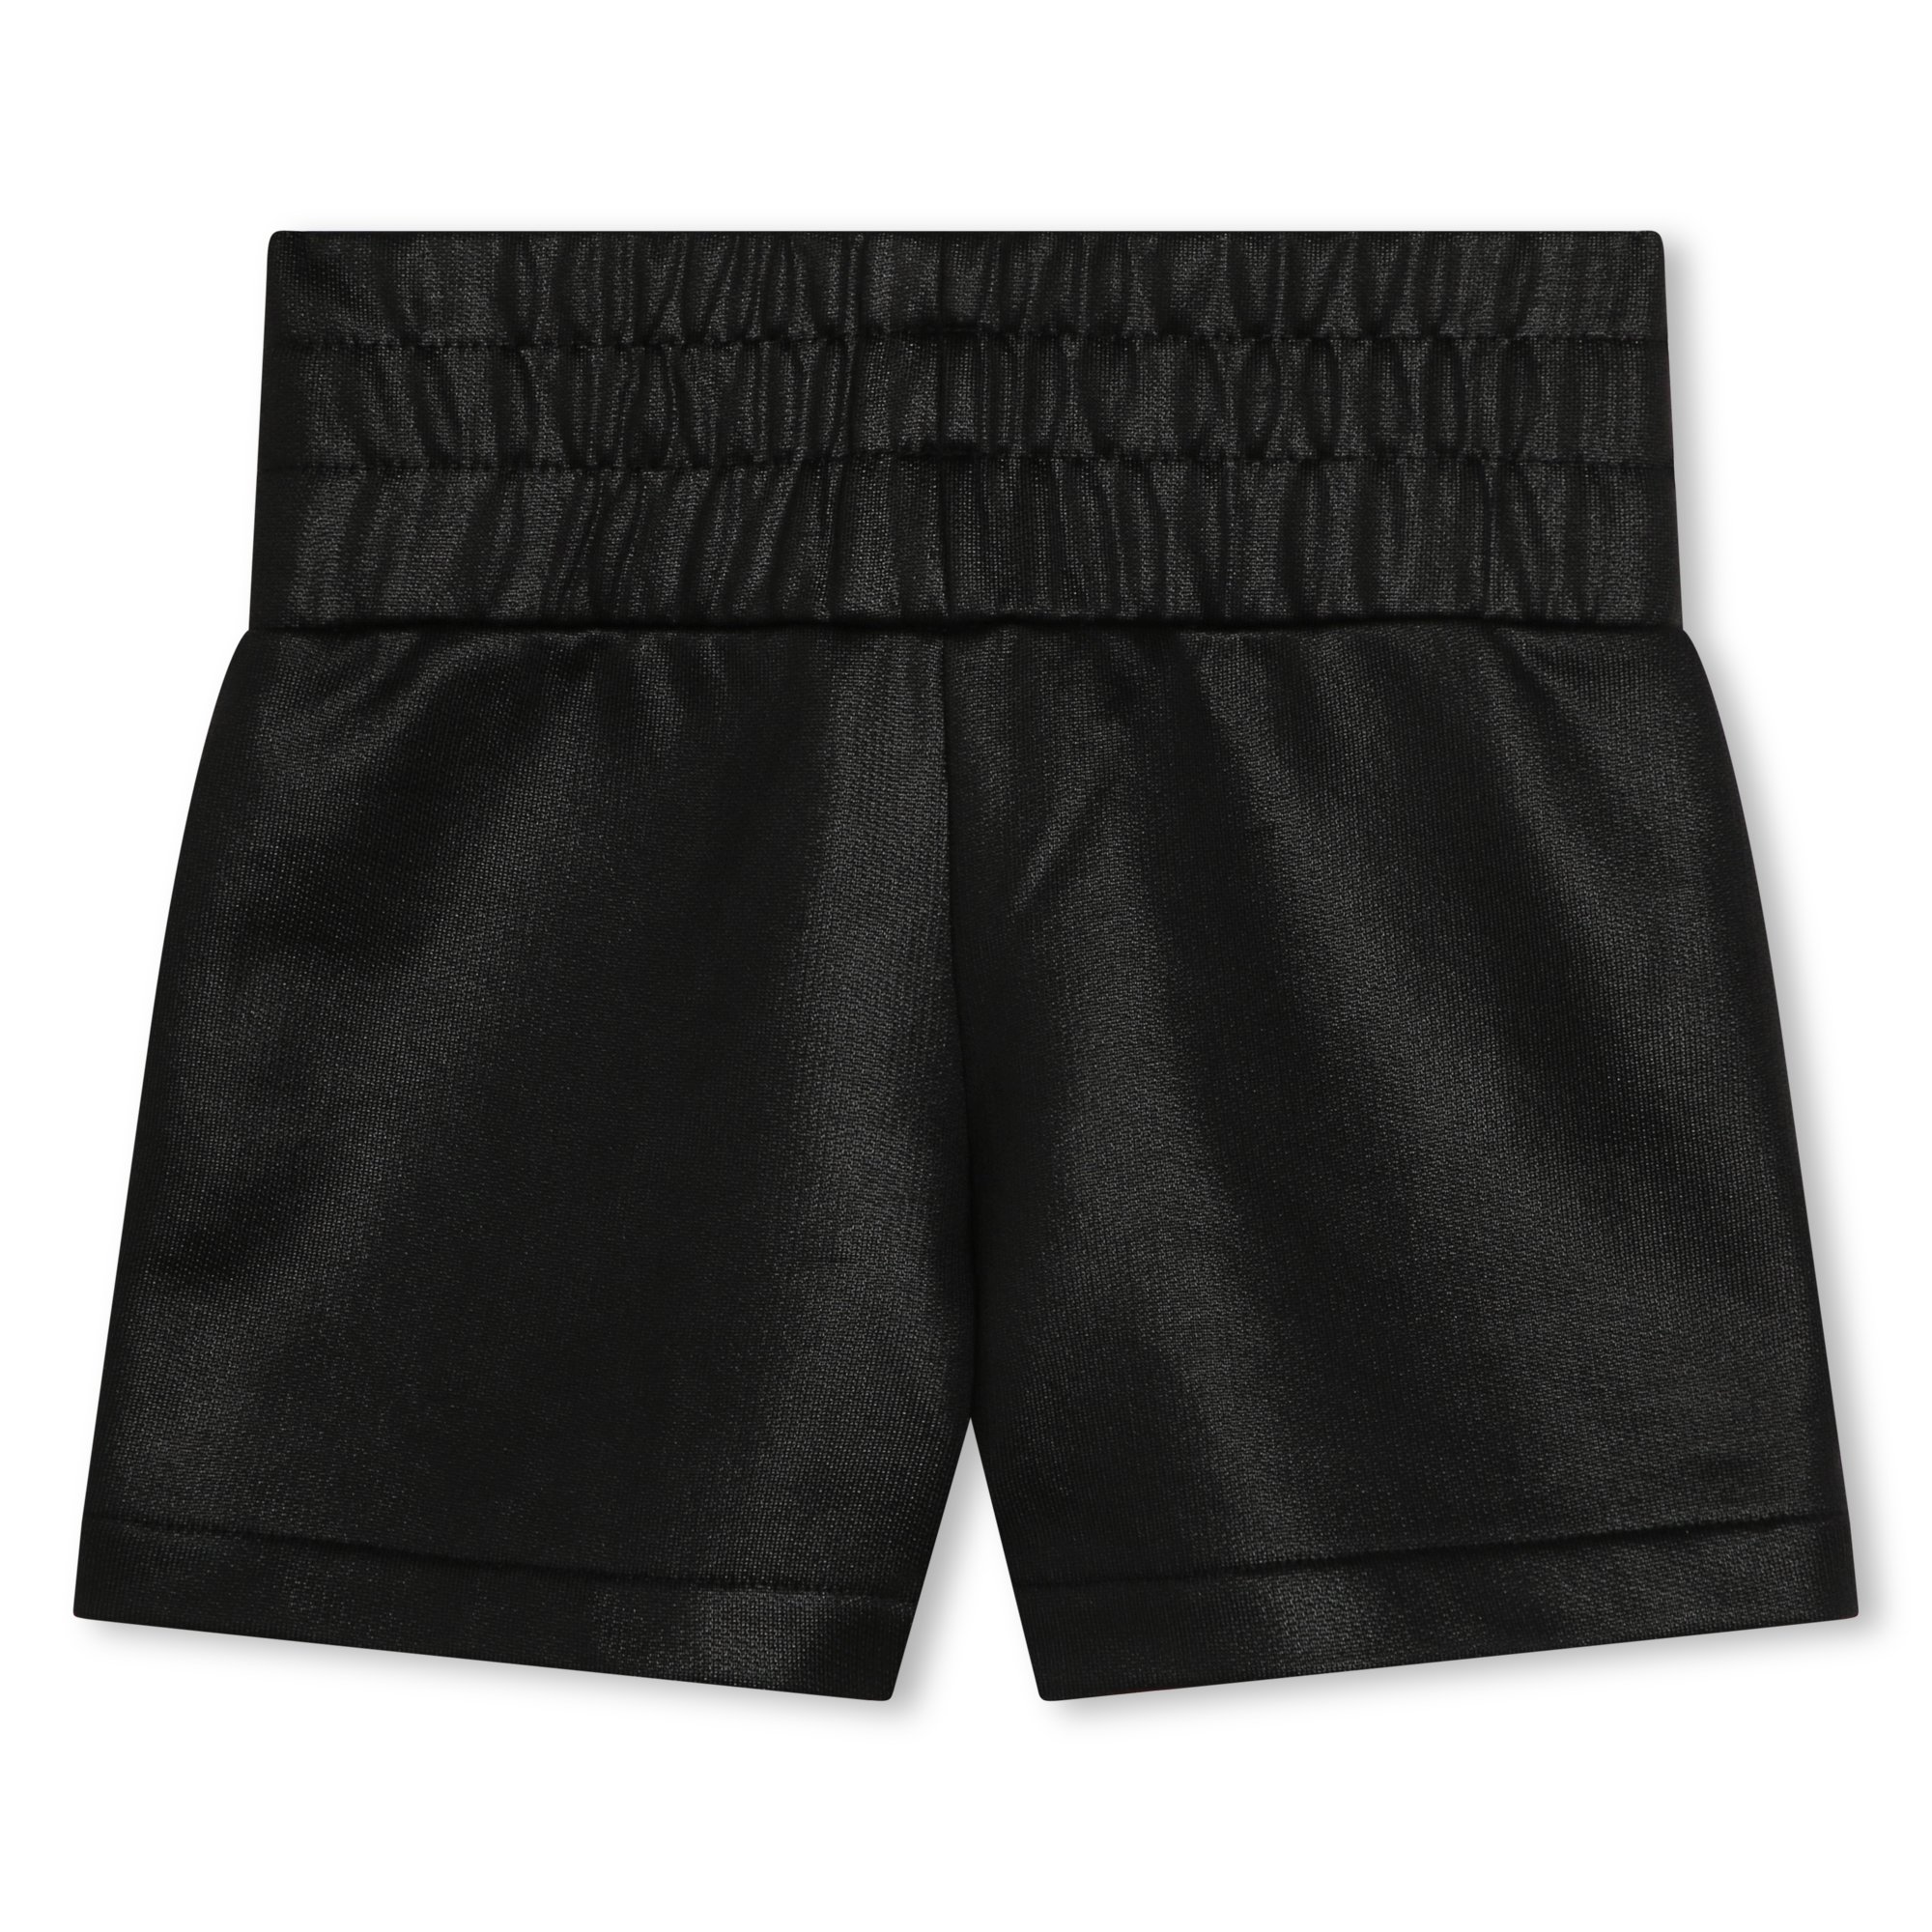 Pantalón corto de muletón DKNY para NIÑA